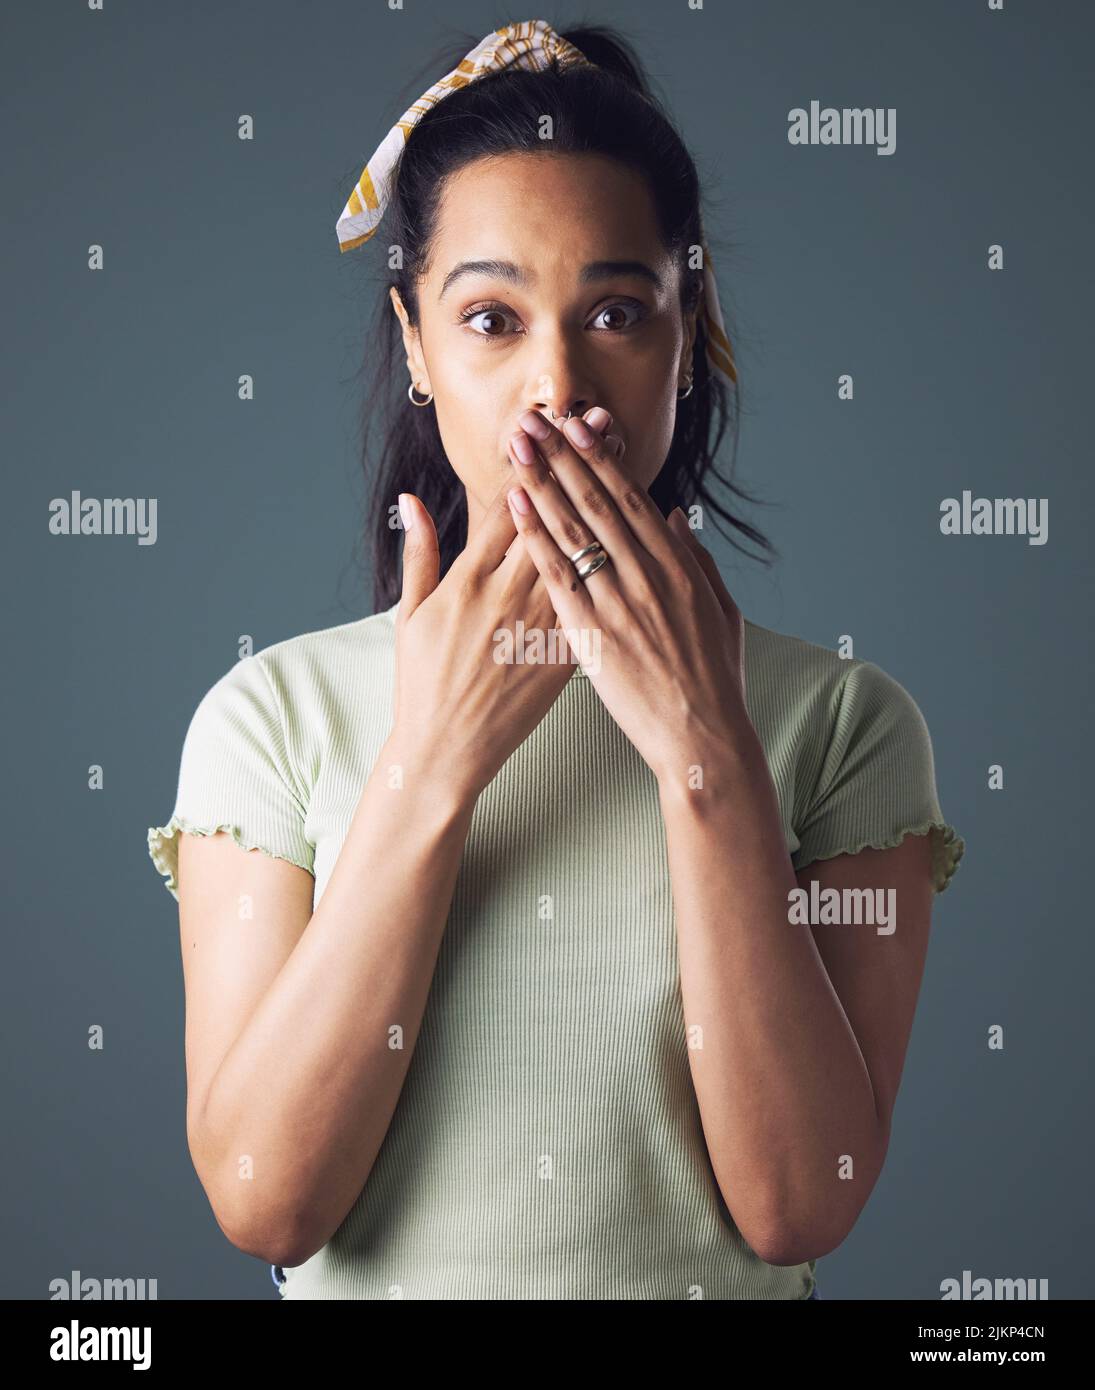 Ich bin nicht gut damit, Geheimnisse zu bewahren. Studioaufnahme einer jungen Frau, die mit ihren Händen über ihrem Mund steht. Stockfoto